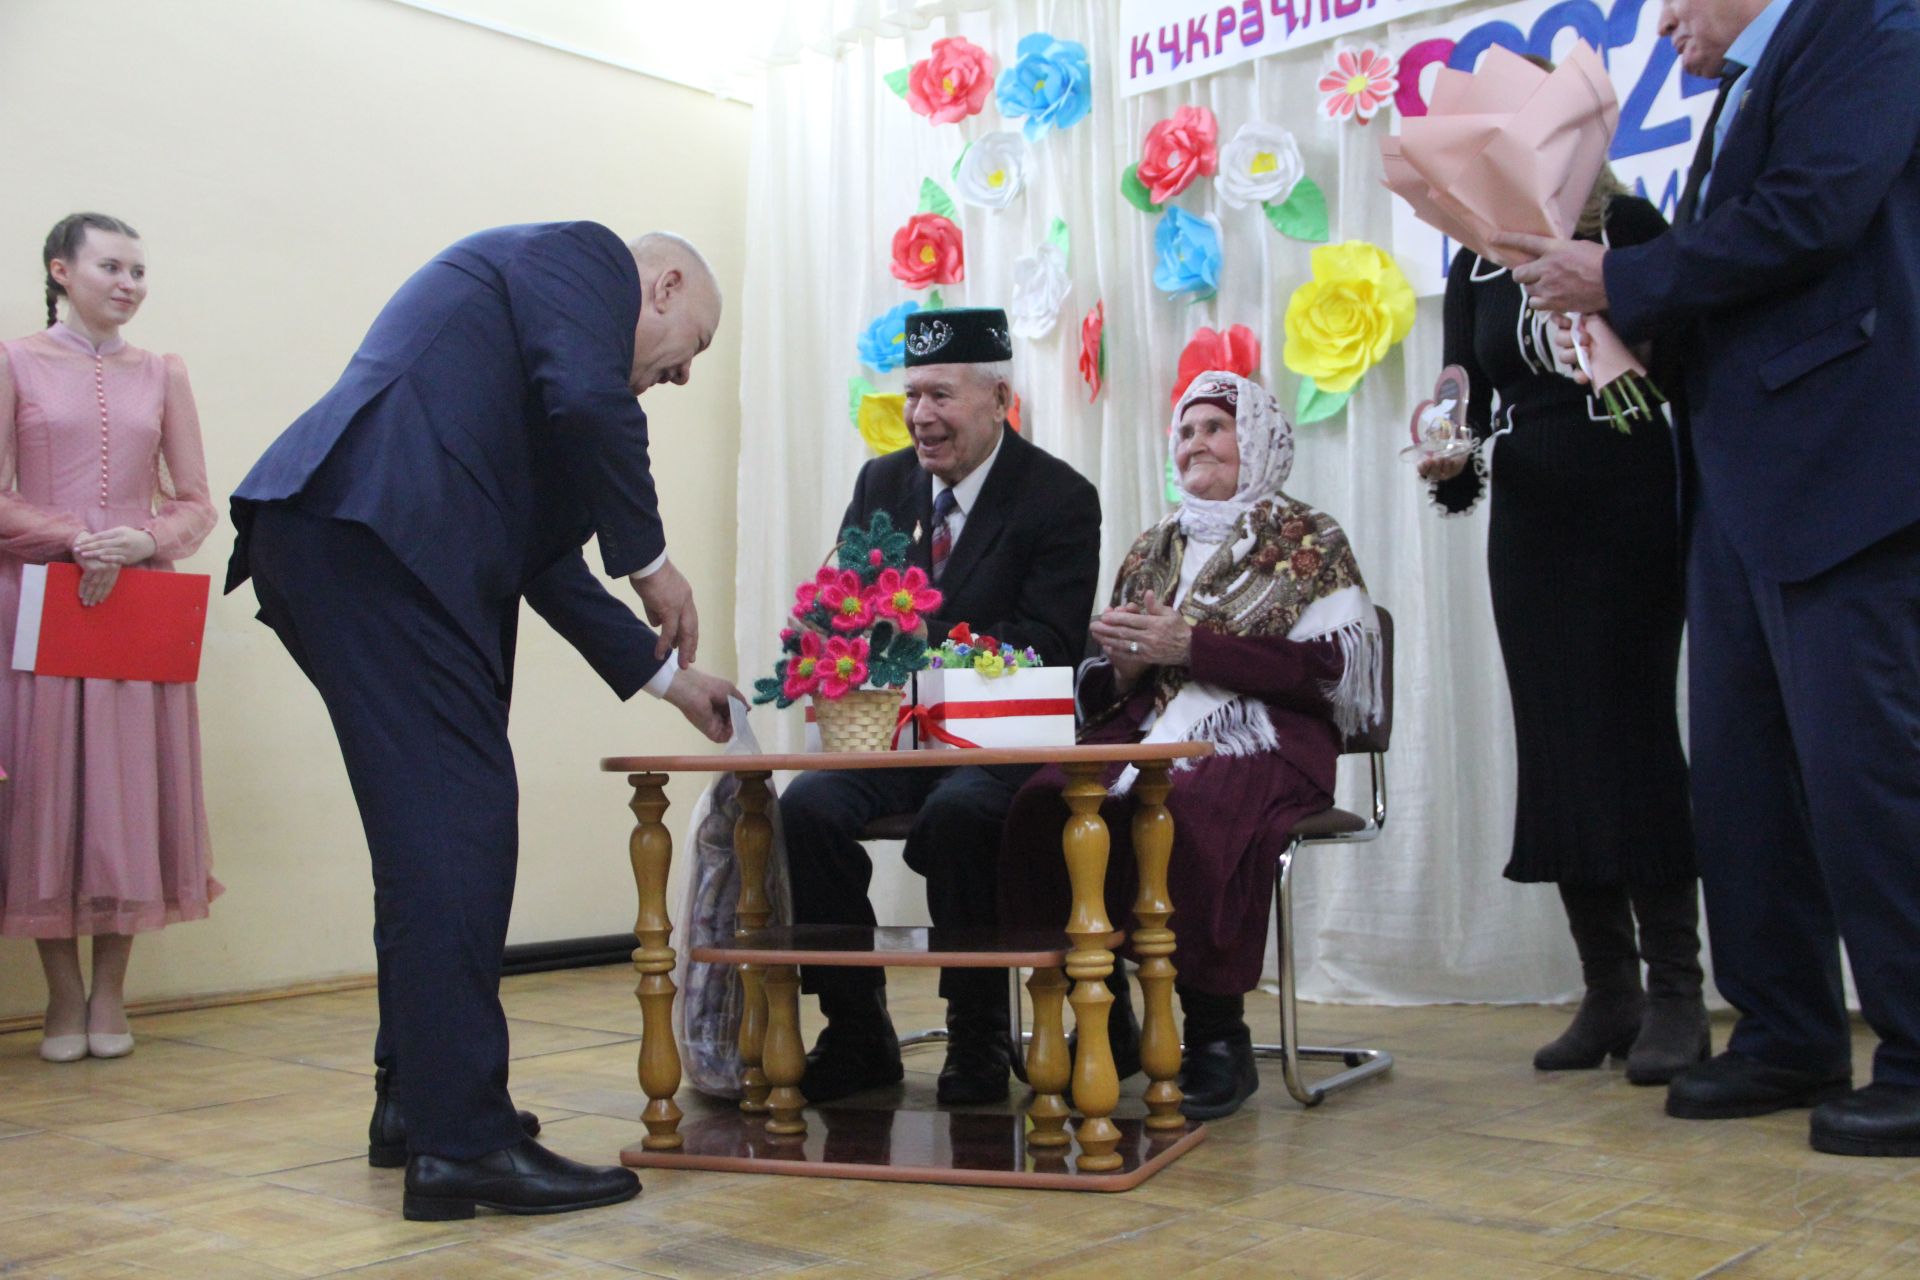 Почётный житель села Иске Рязап Гаммар Файзиевич Файзиев отметил сразу два юбилея